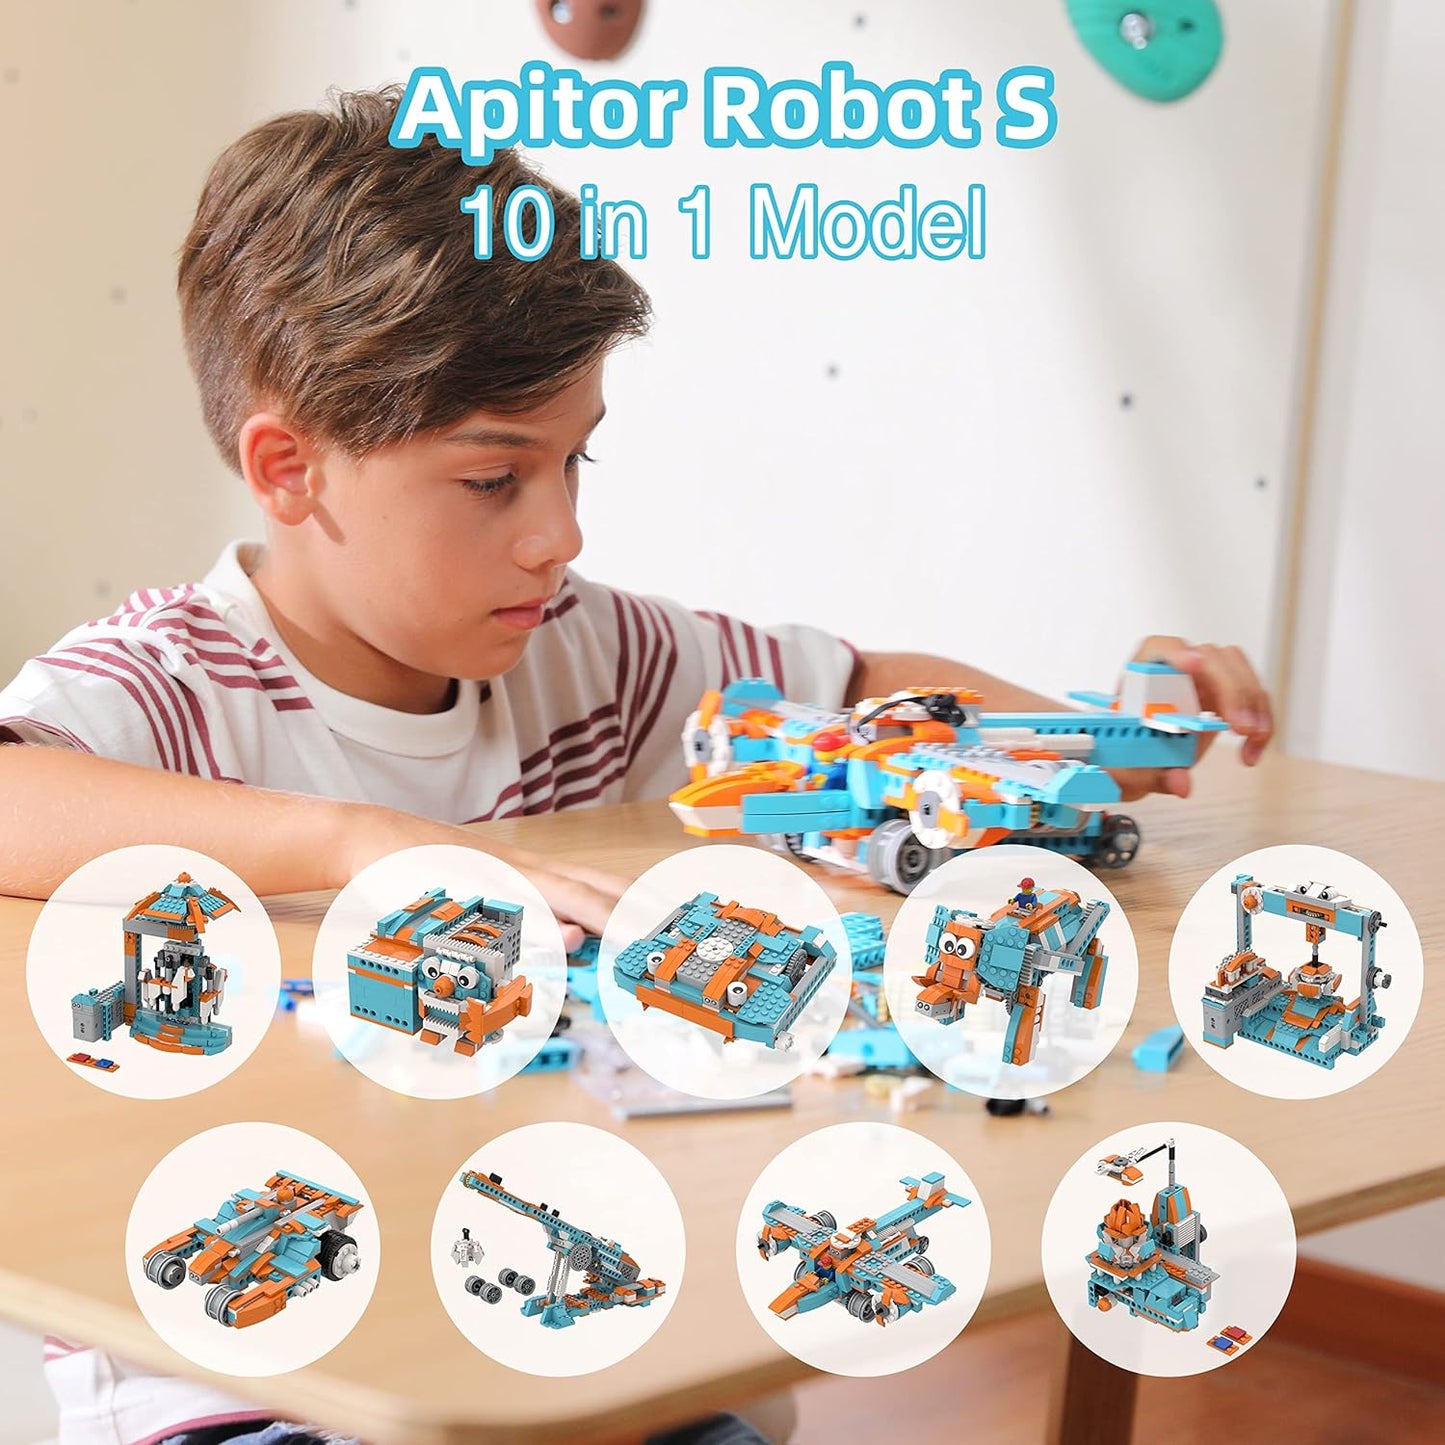 Apitor Robot S 10 In 1 Model